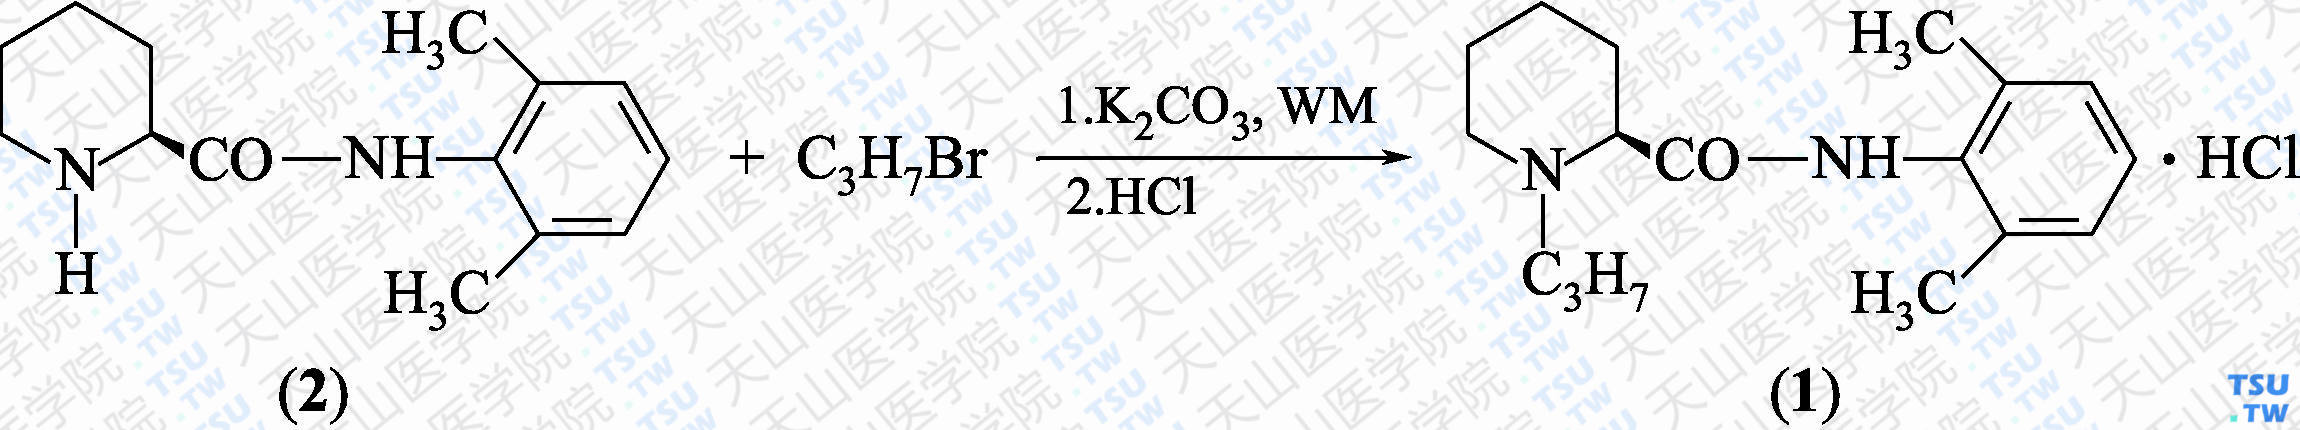 盐酸罗哌卡因（分子式：C<sub>17</sub>H<sub>26</sub>N<sub>2</sub>O·HCl）的合成方法路线及其结构式